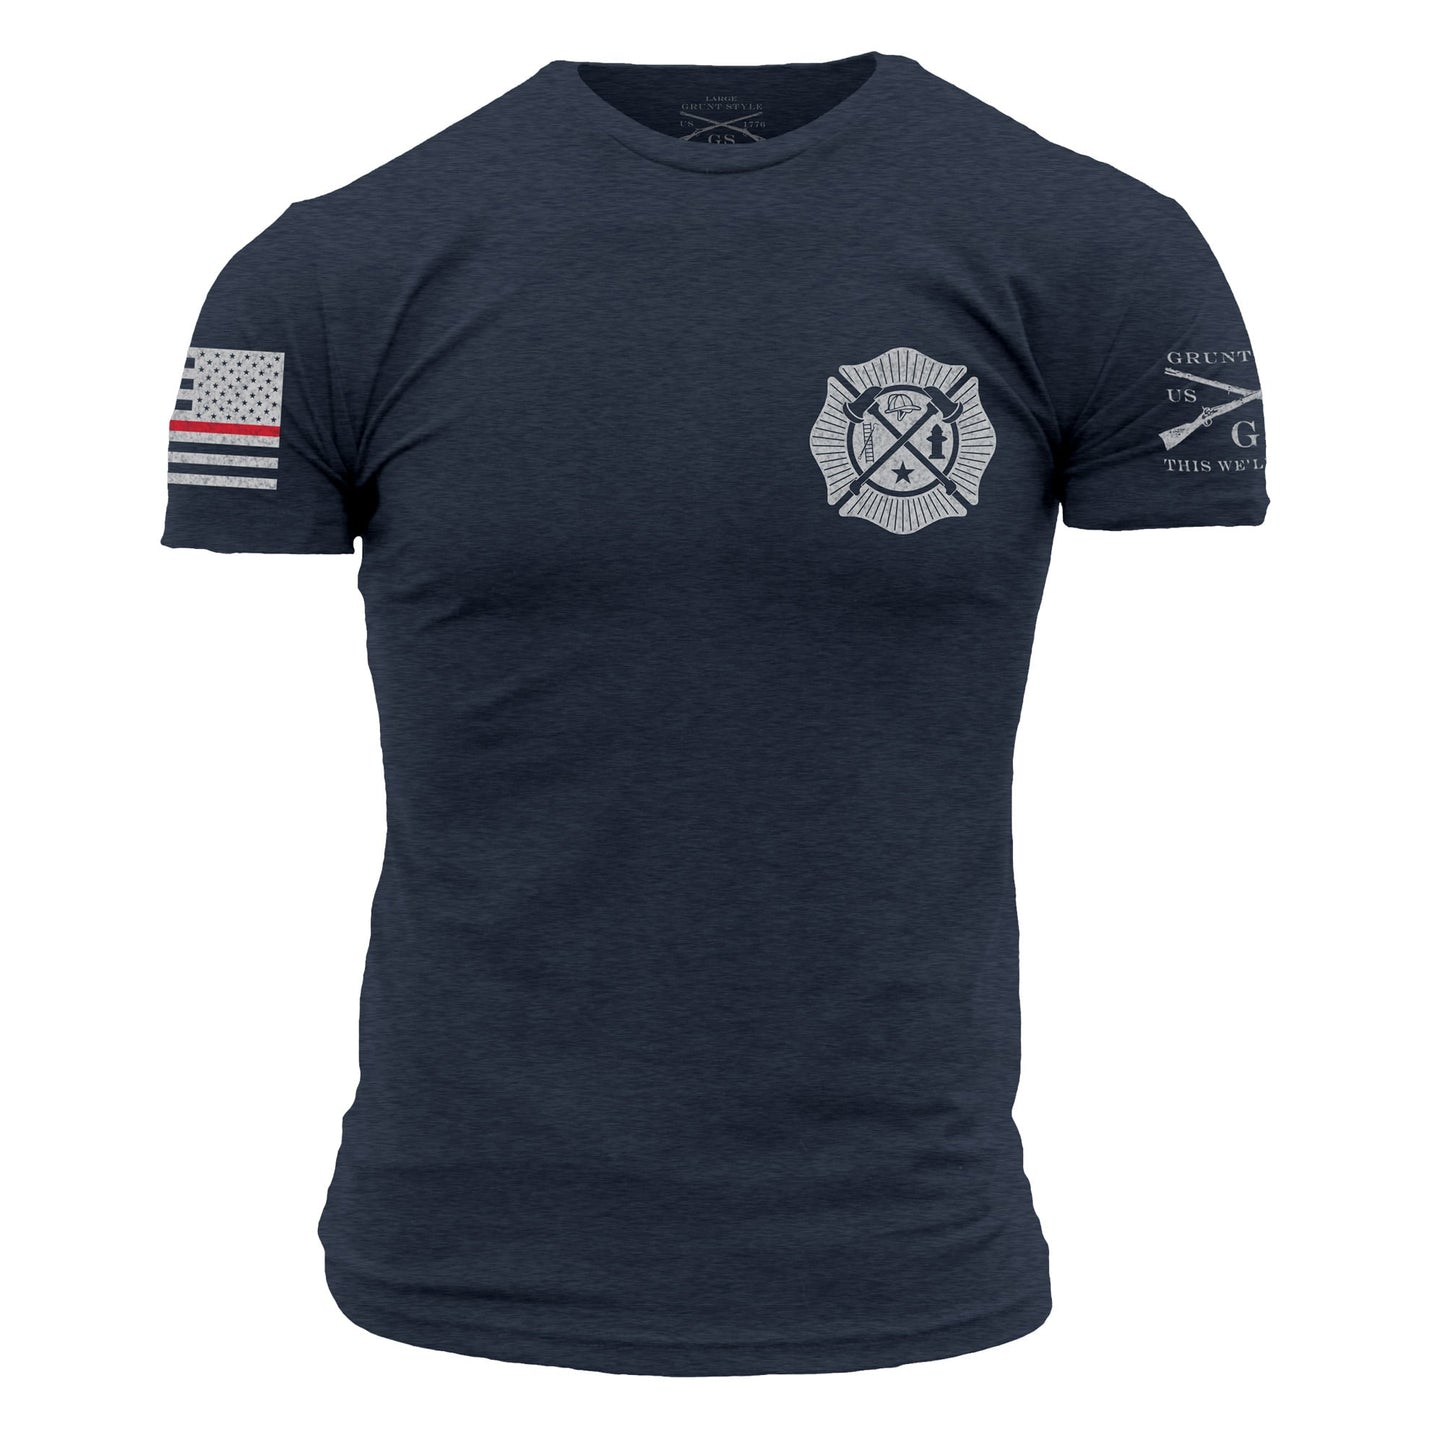 Wherever Flames May Range Shirt for Men | Grunt Style 